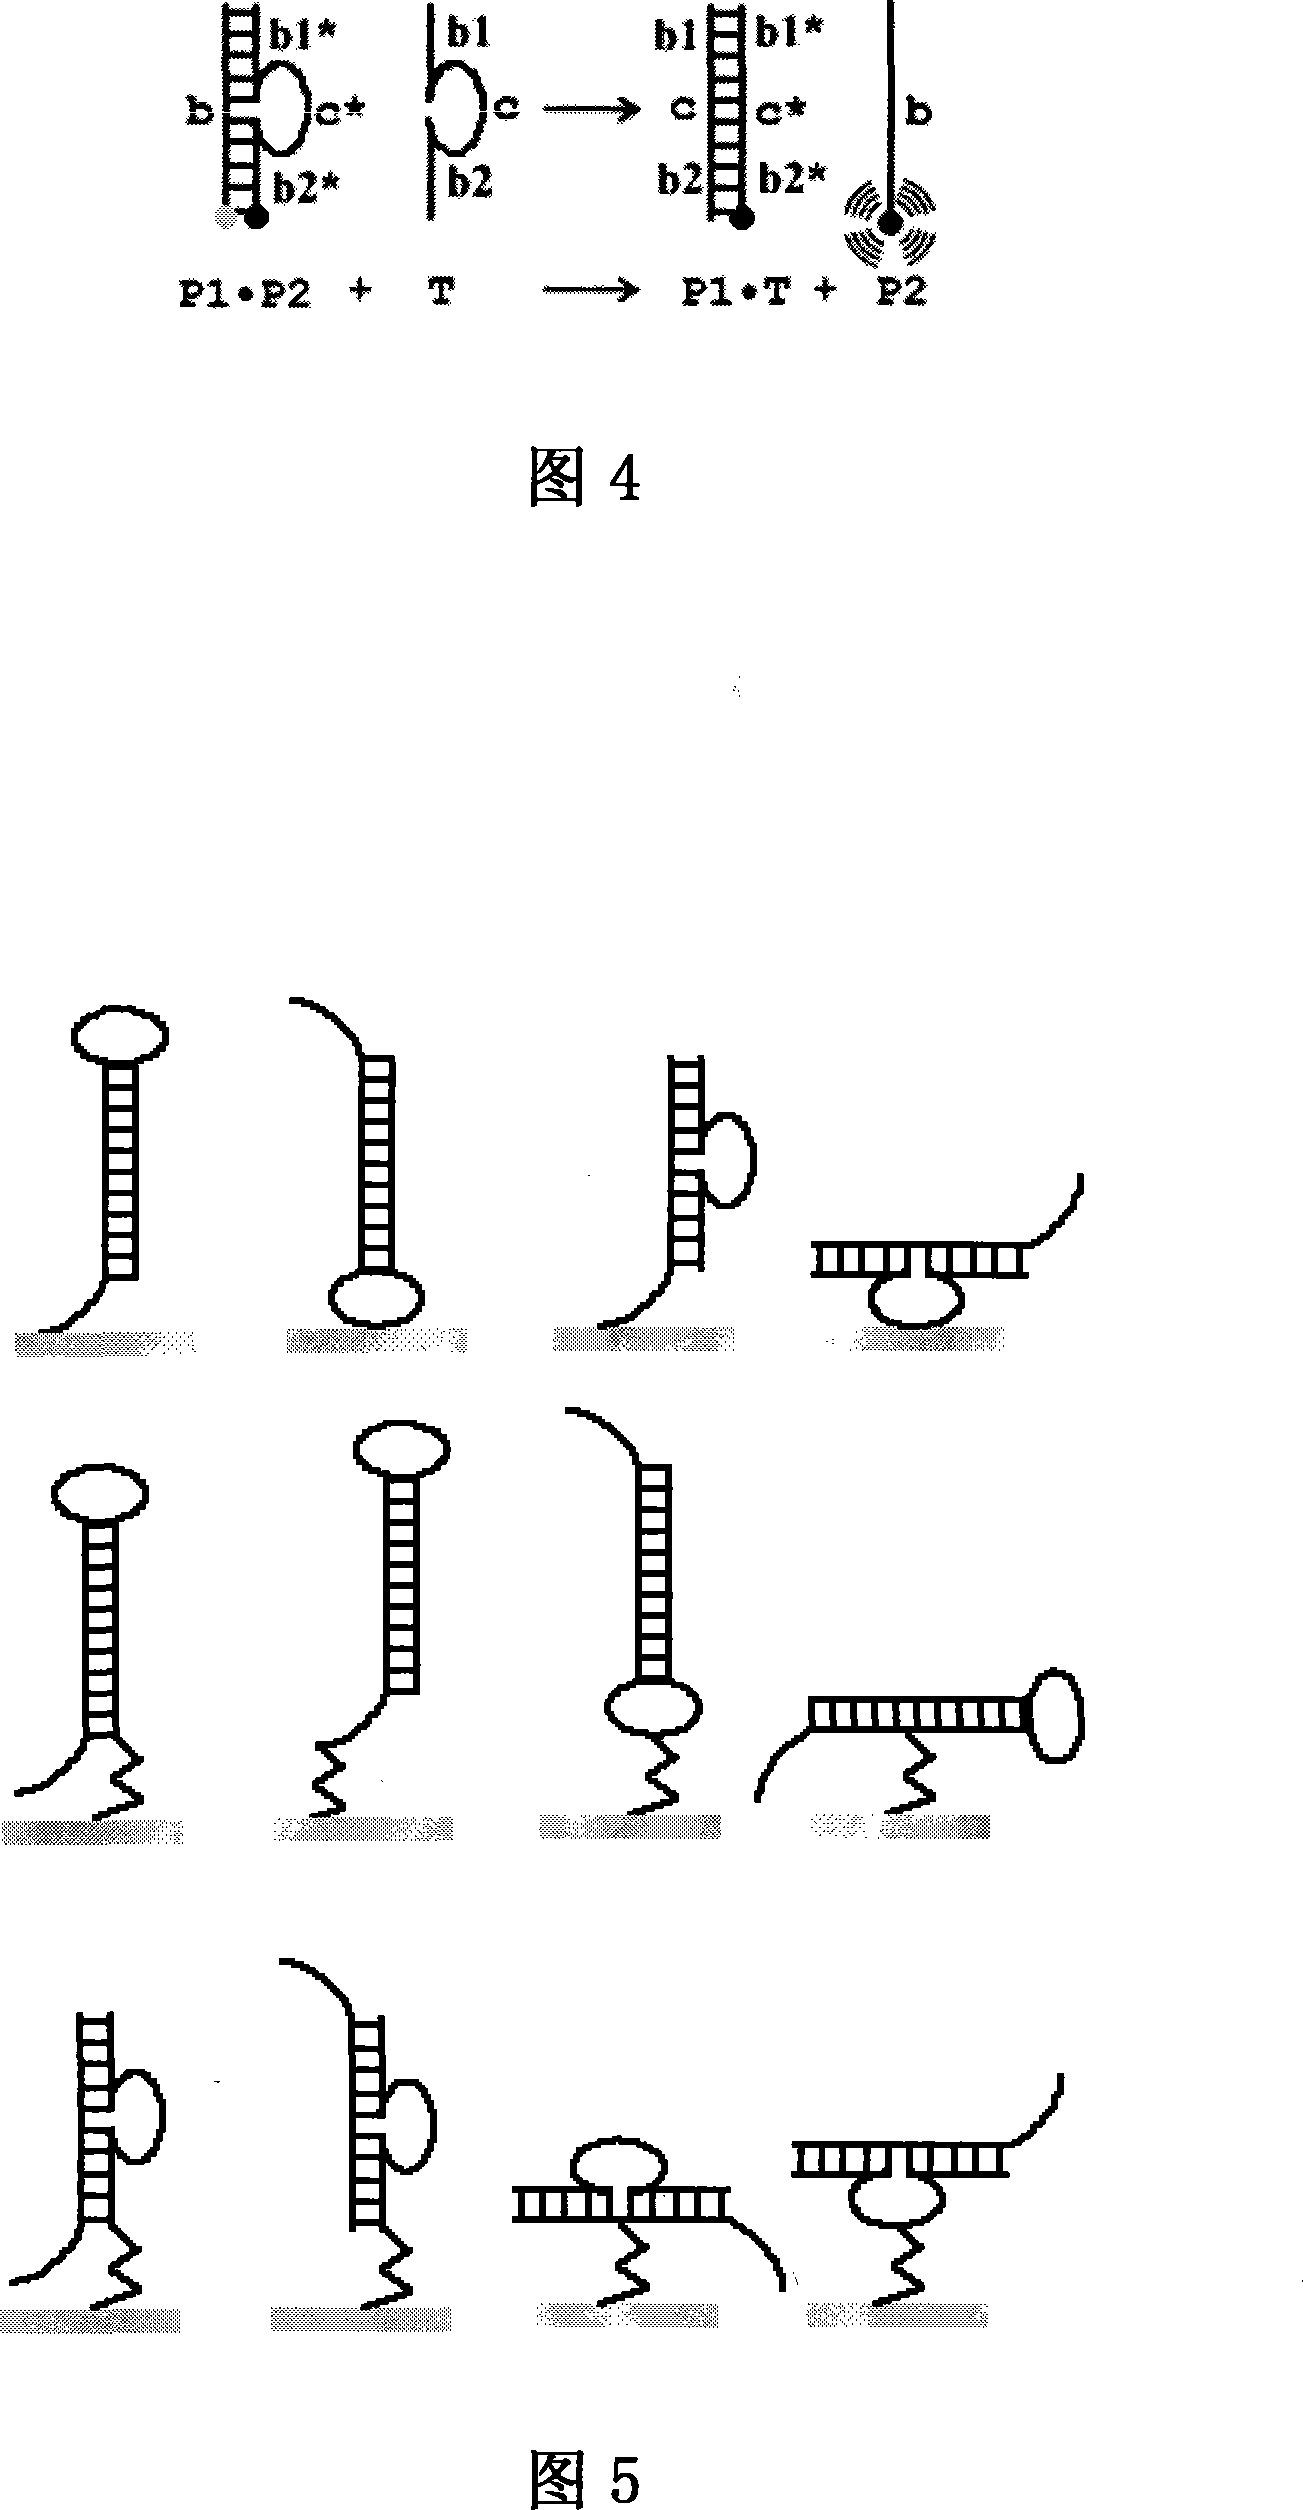 Stem-ring type oligonucleotide probe